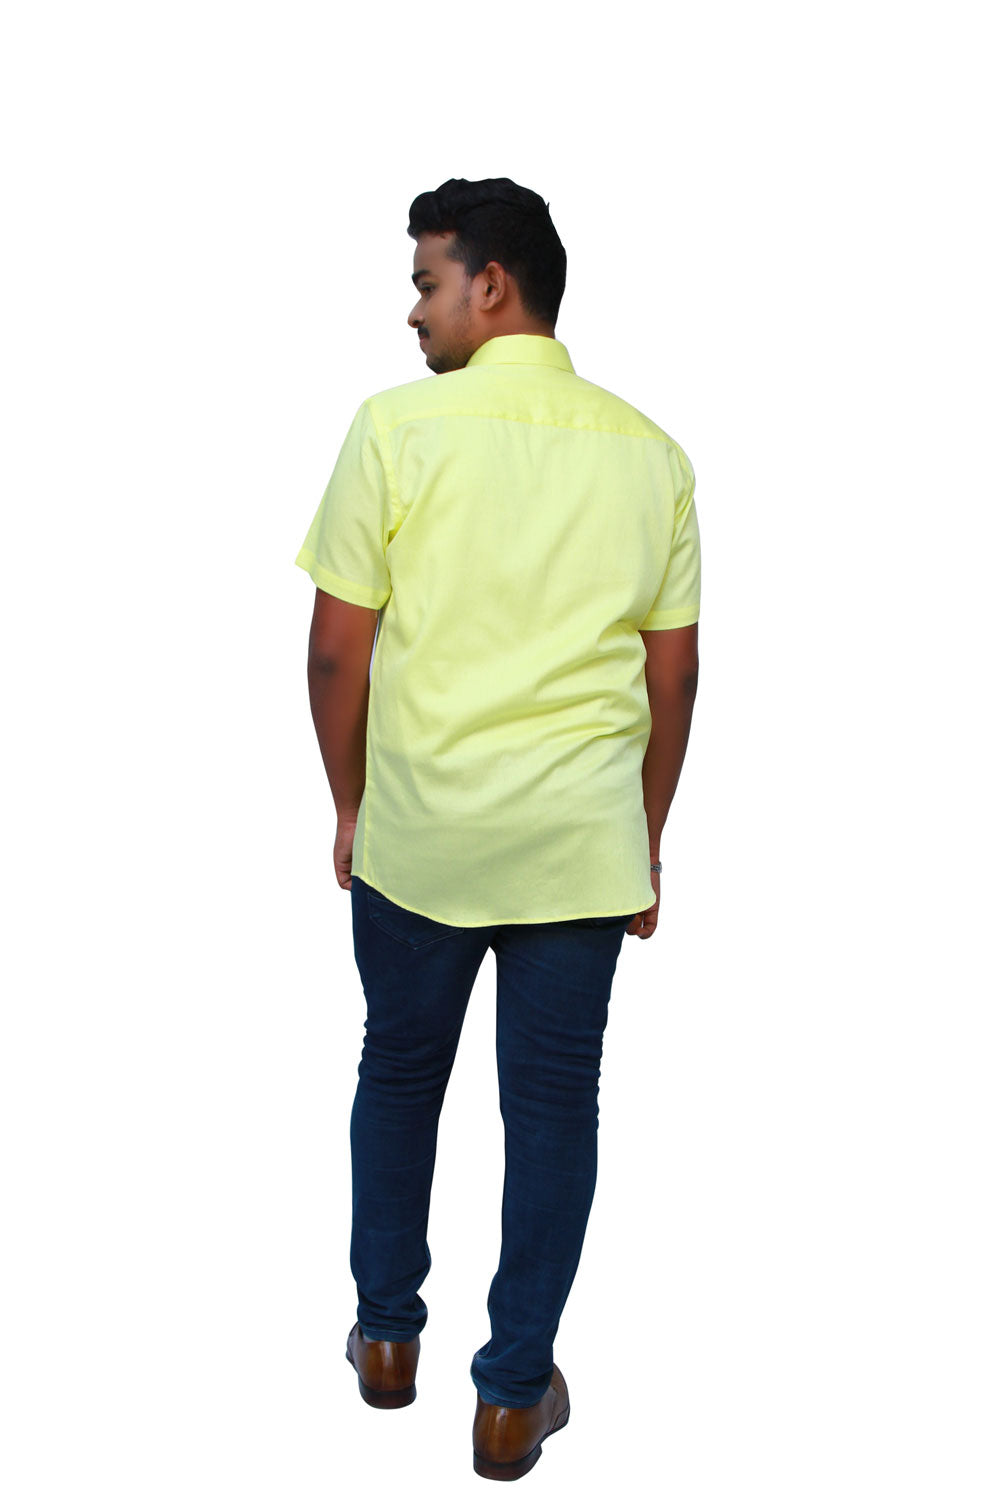 Solid Yellow Men’s Shirt |  S3S723